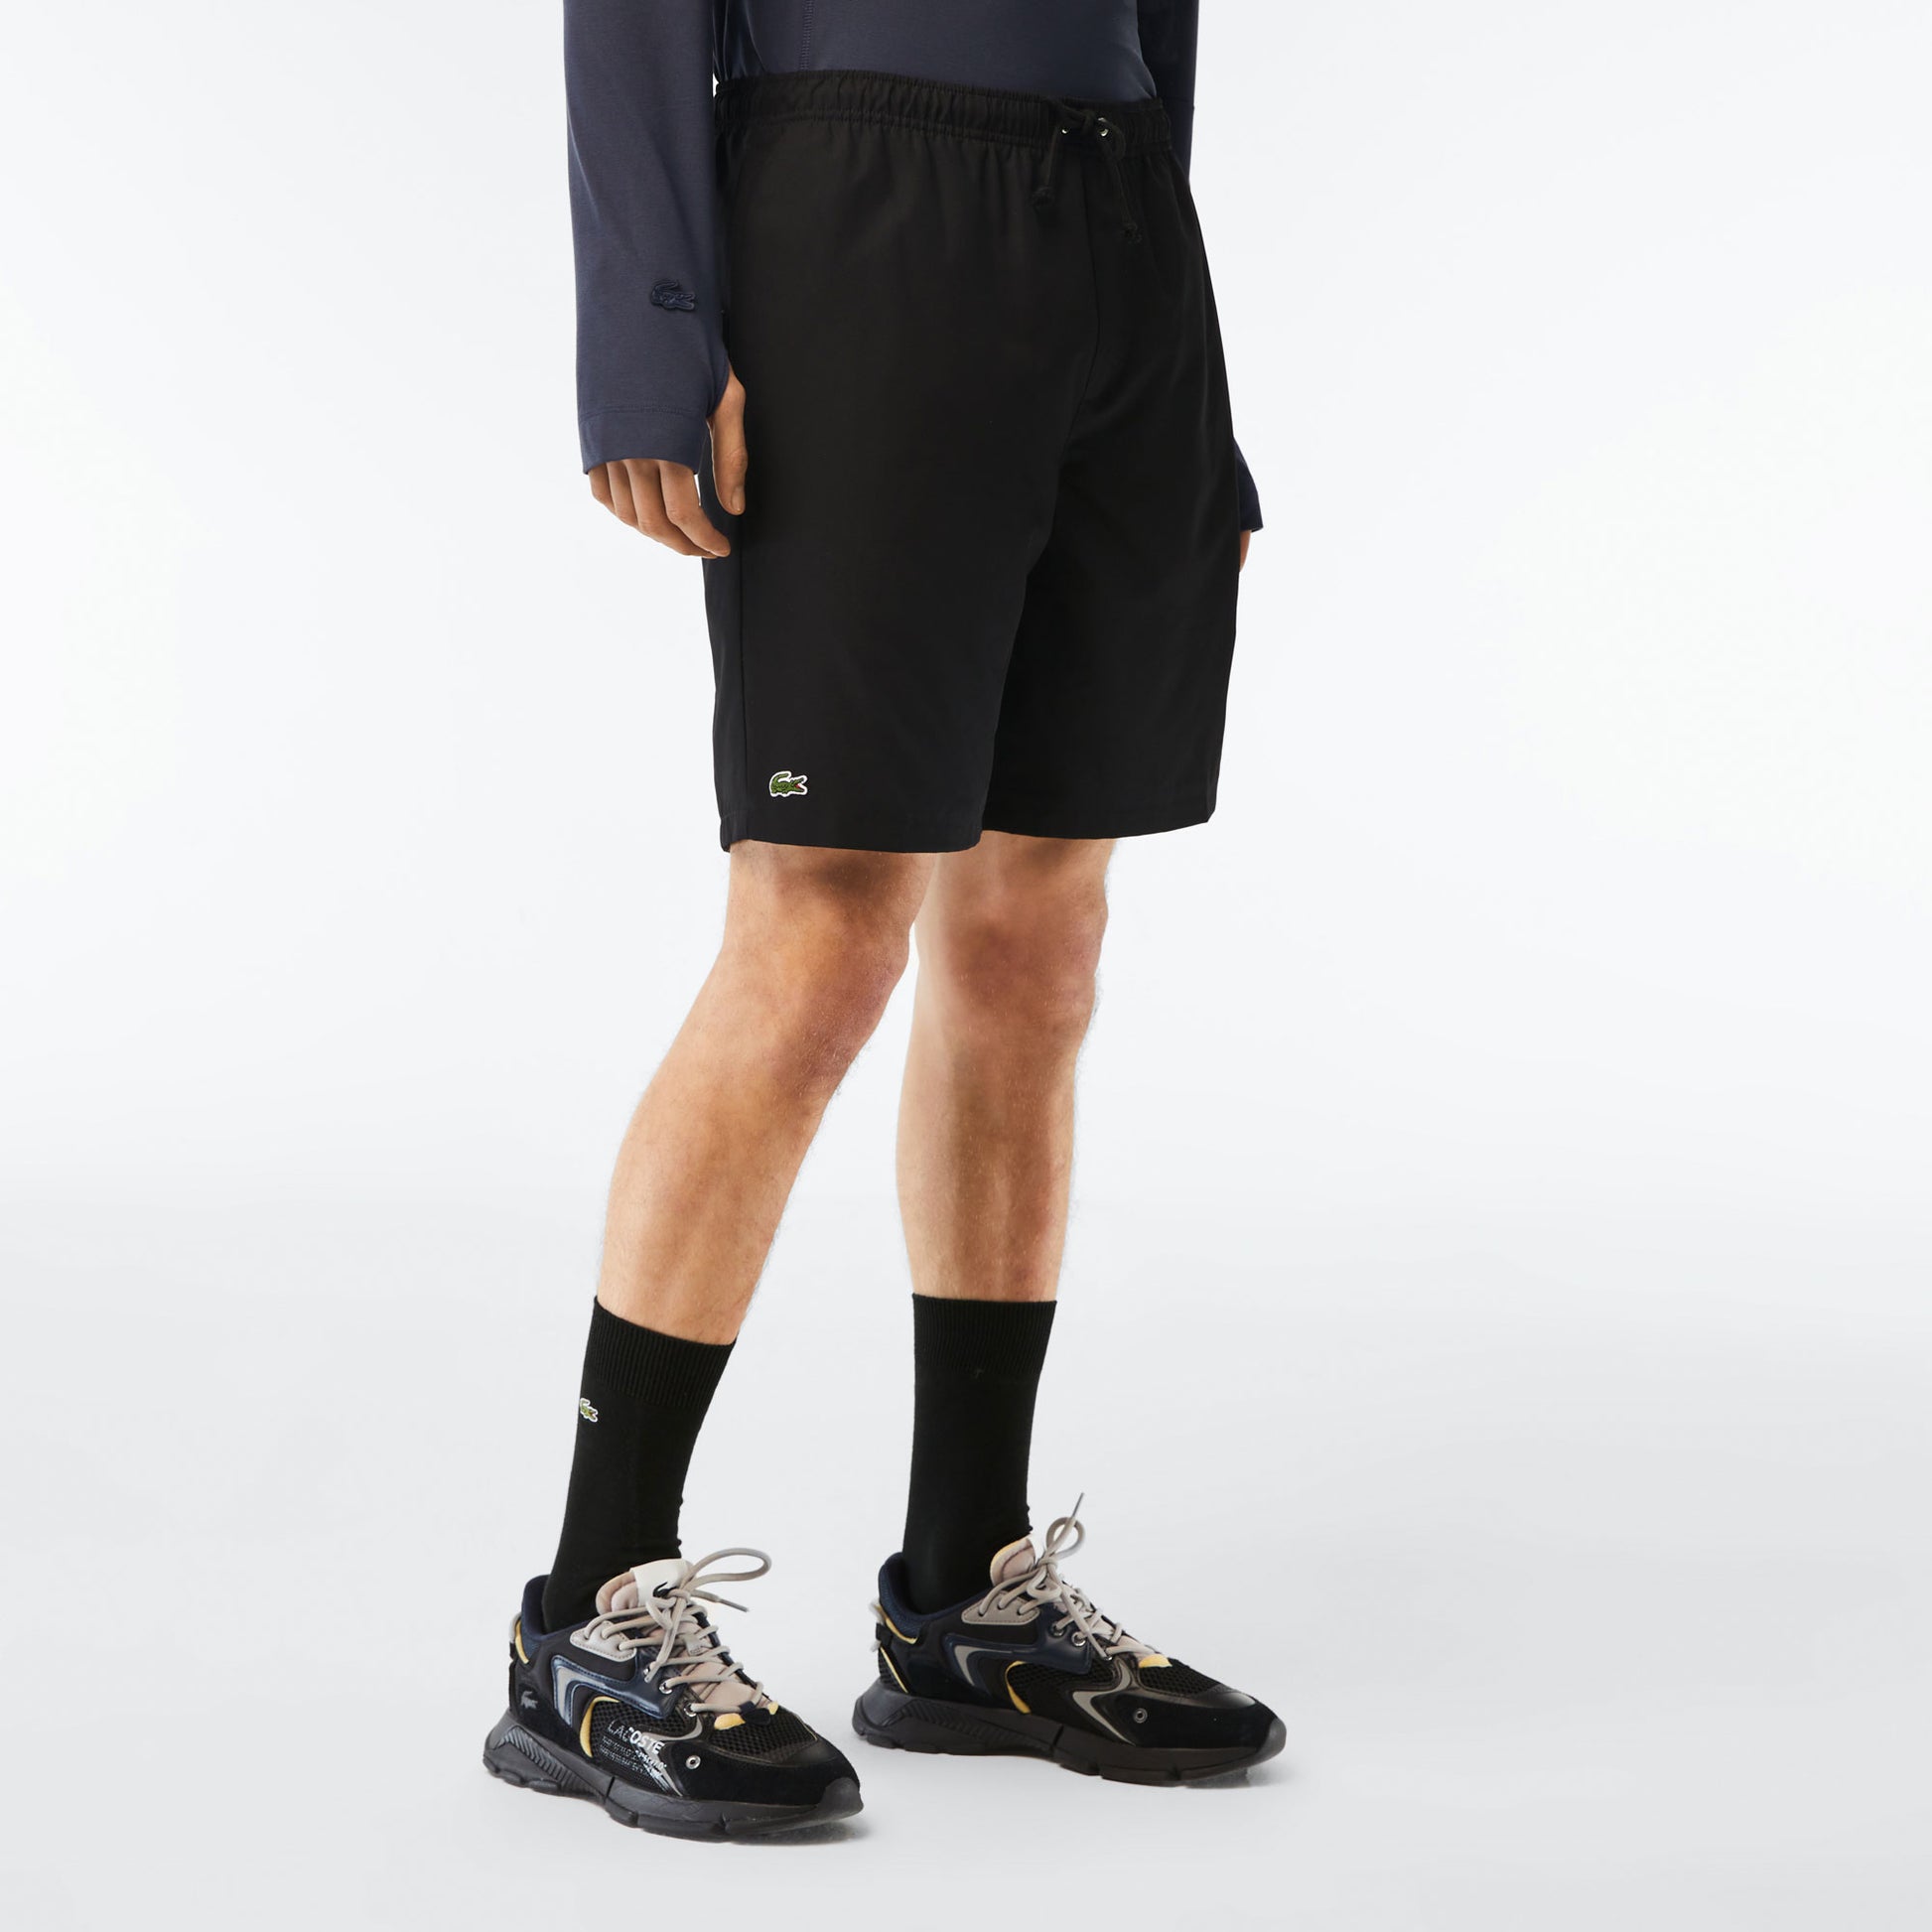 Lacoste Core Men's Tennis Shorts Black (1)